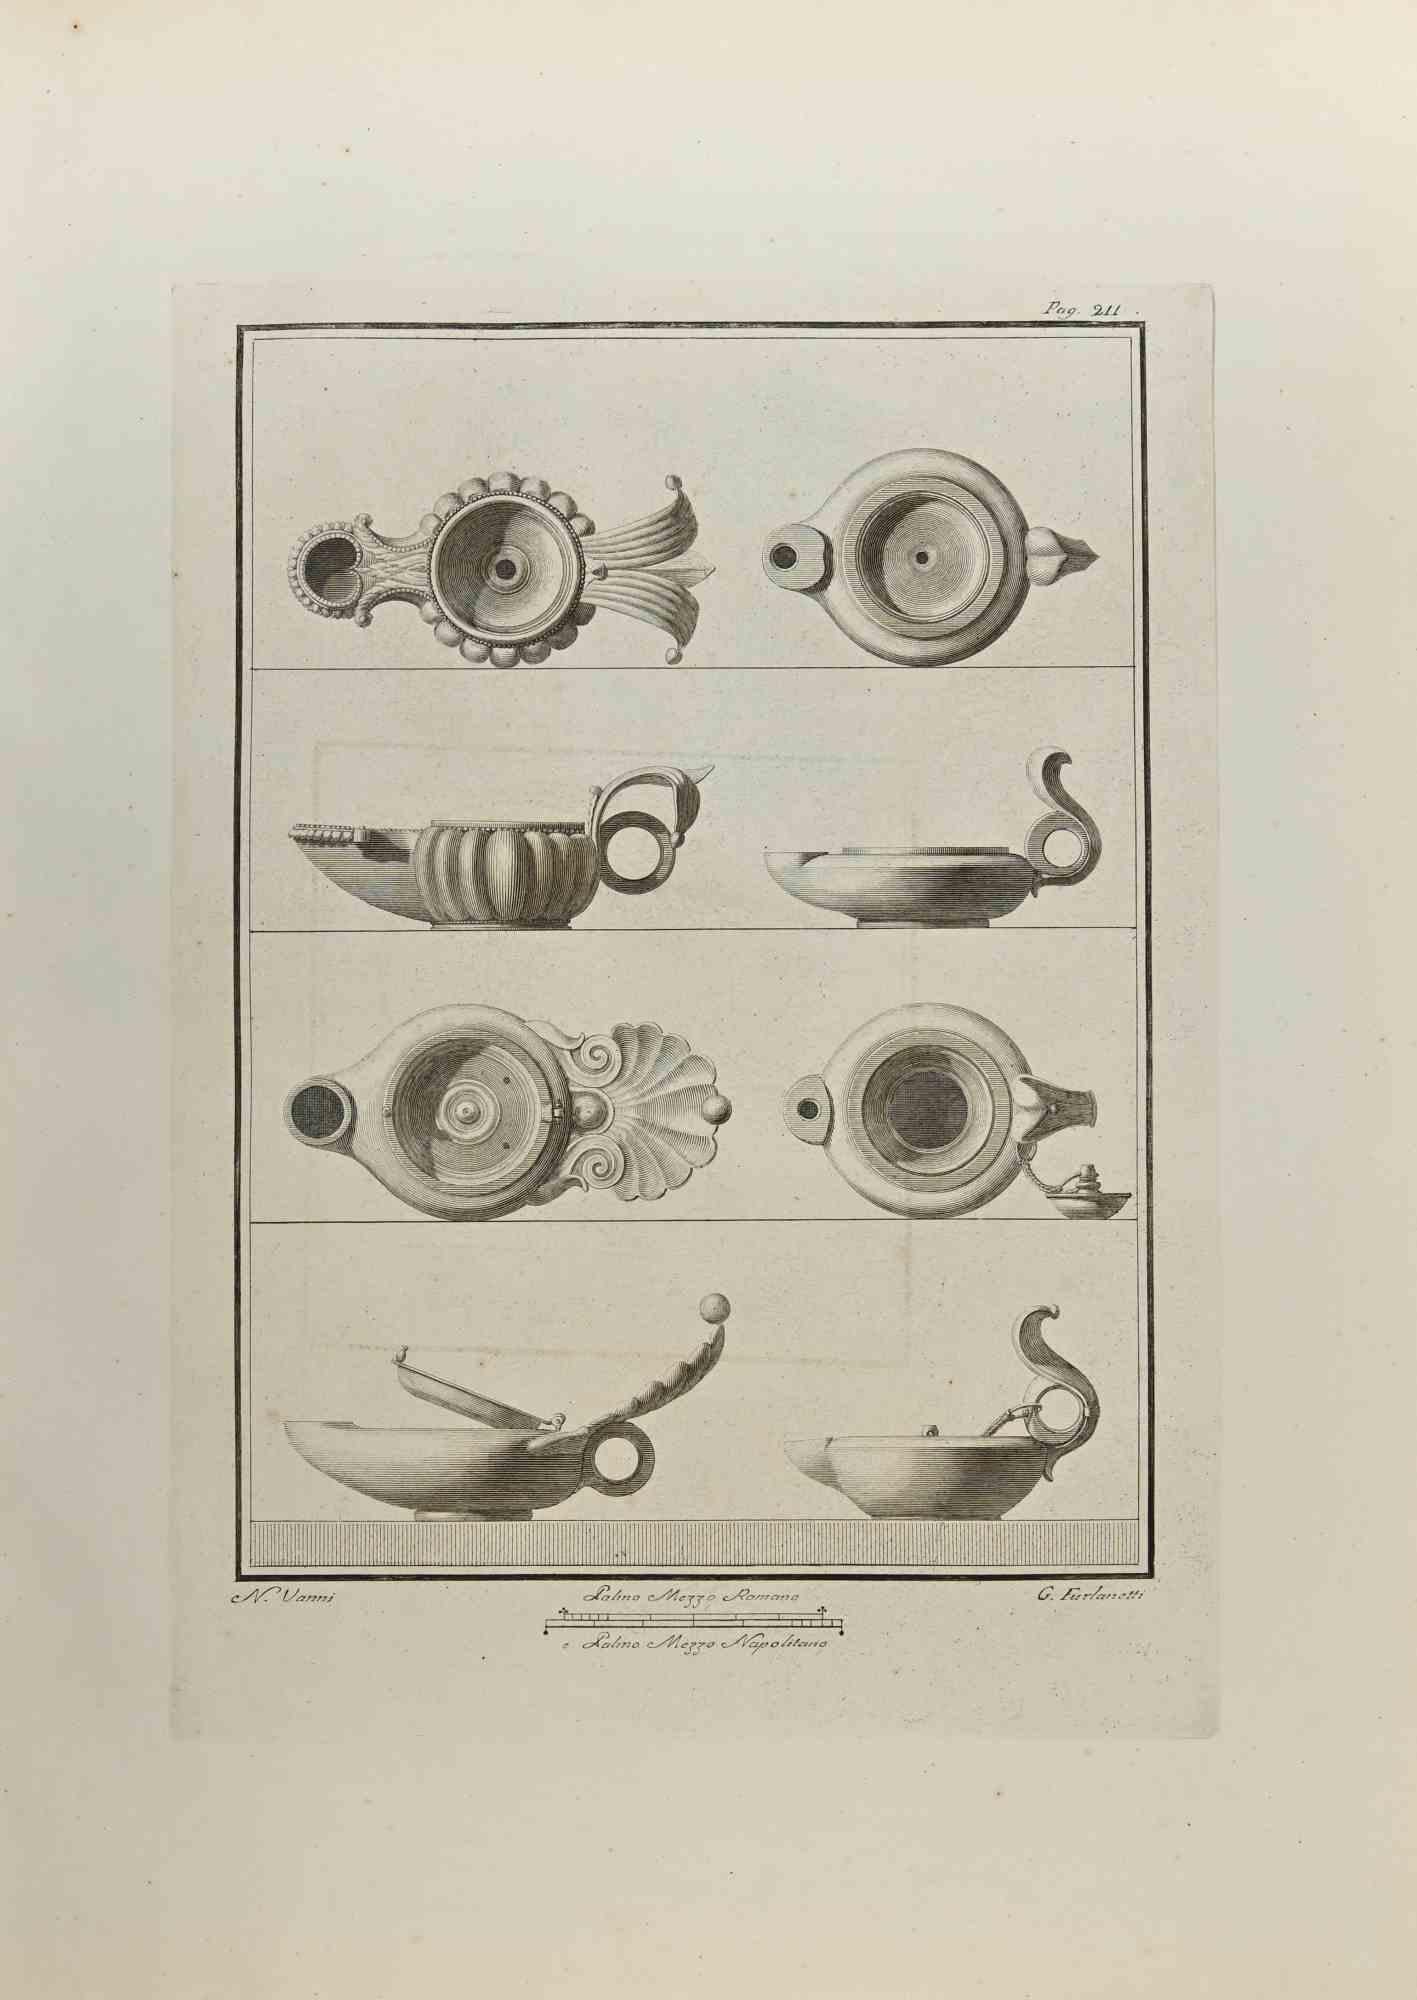 Das Stilleben aus den "Antiquitäten von Herculaneum" ist eine Radierung auf Papier, die von G. Furlanetti und Nicola Vanni im 18.

Signiert auf der Platte.

Guter Zustand mit einigen Faltungen.

Die Radierung gehört zu der Druckserie "Antiquities of